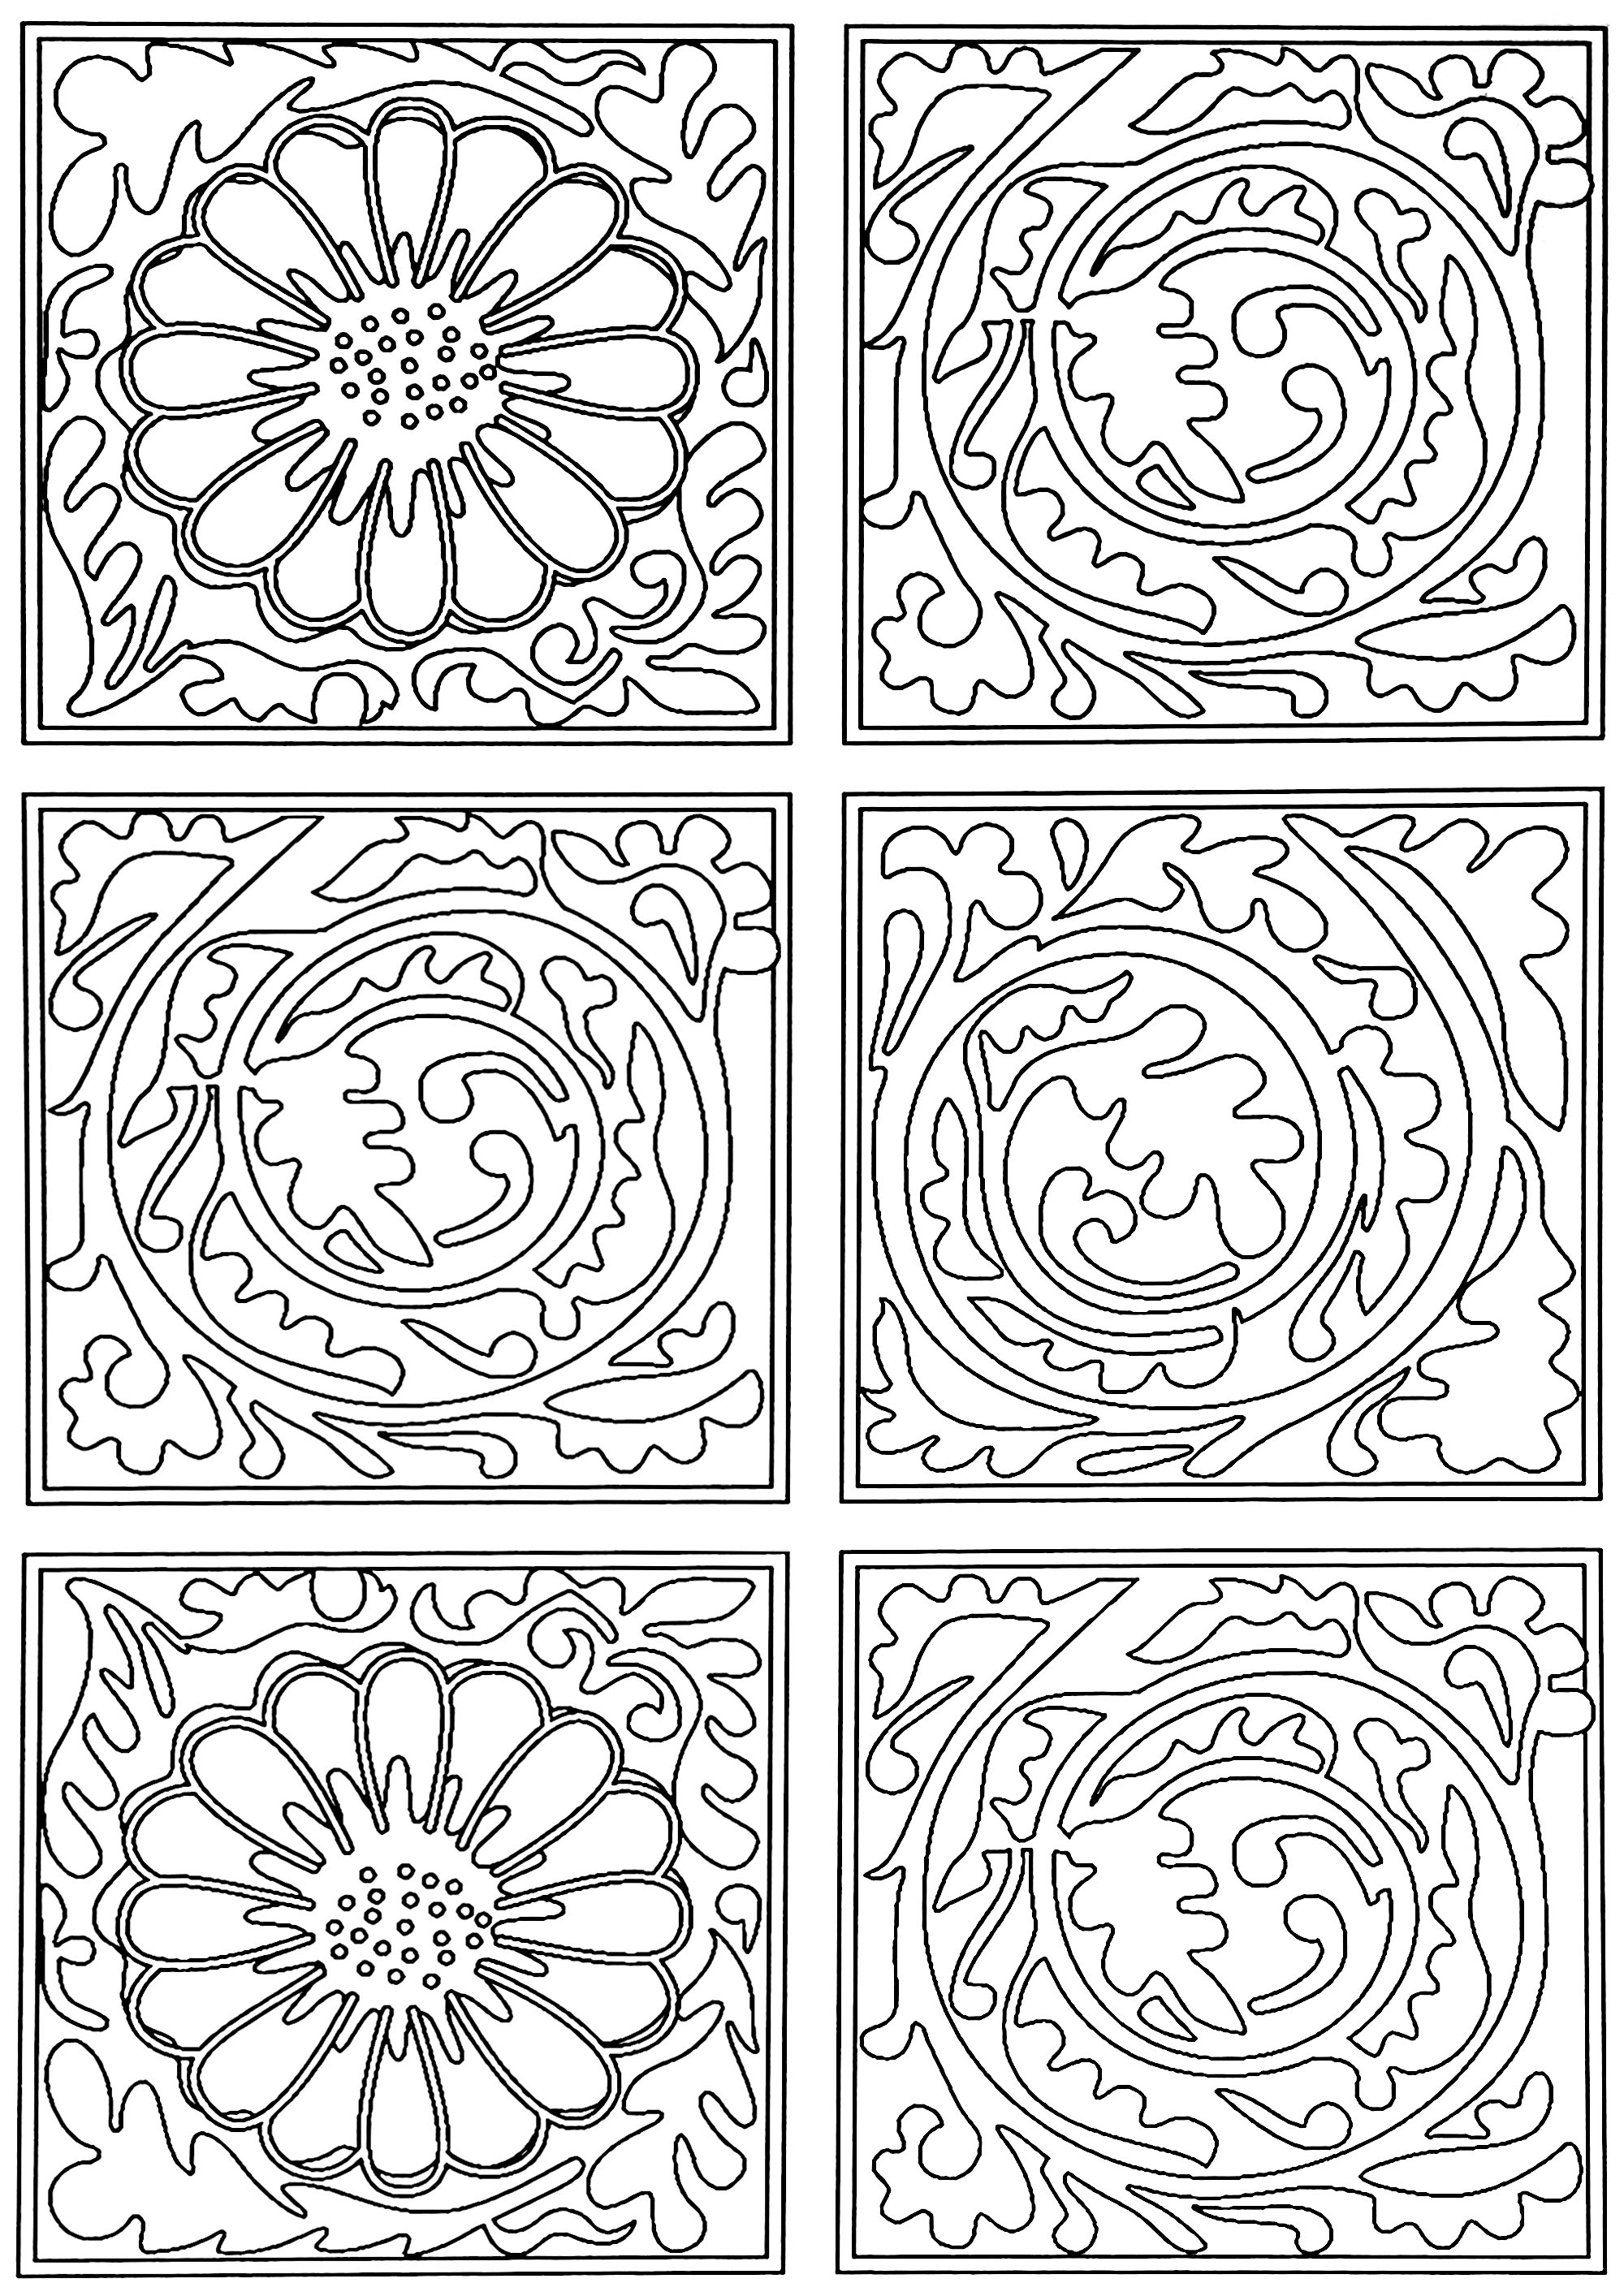 Página para colorear creada a partir del patrón de papel pintado creado por William Morris: 'Pañal' en 1870. Este motivo está formado por cuadrados con volutas de hojas, intercalados con cuadrados con flores.